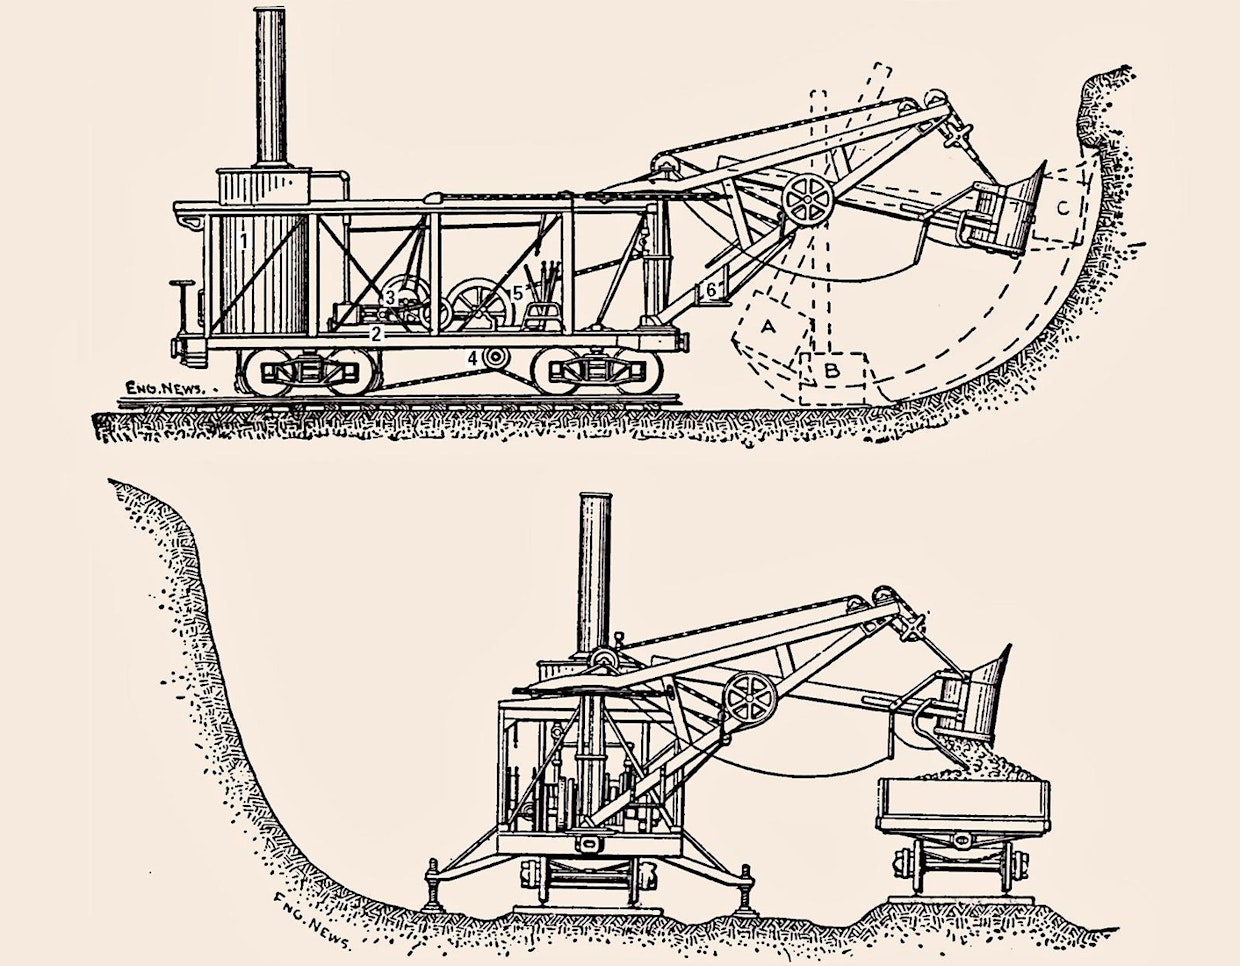 Otisin kaivinkoneen toimintaperiaate tulee esiin tässä vuonna 1894 julkaistussa kaivinkoneita ja kaivinkonetekniikkaa käsitelleen kirjan kuvassa. Höyrykattila (1) ja kattilan tarvitsema vesisäiliö oli sijoitettu kiskoilla liikkuvan alustan takaosaan. Kaivinkoneen päähöyrykone (2) oli heti kattilan edessä. Tämän höyrykoneen pyörittämältä pääakselilta otettiin voima puomin sivukäännön rummulle (3), kauhan nostoketjun rummulle (4) ja ketjuvälitykselle, jonka avulla kone liikkui kiskoilla. Koneen toinen kuljettaja ohjasi näitä toimintoja seisoen koneen etuosassa (5). Toinen kuljettaja seisoi puomin sivulla olevalla tasanteella (6) ja käytti kauhanvartta eteen-taakse liikuttavaa koneistoa sekä kauhan tyhjennysluukun laukaisunarua. Pistokaivinkoneen kauhan liike alkaa, kun kauha edellisen kauhallisen tyhjennyksen jälkeen päästetään putoamaan alaspäin painovoiman vaikutuksesta. Liikkeen vauhti saa kauhan heilahtamaan niin paljon taaksepäin (A), että sen tyhjennysluukku menee kiinni. Kuljettaja ohjaa kauhanvarren liikuttelukoneistolla kauhan sopivalle korkeudelle (B), mistä kauha lähtee haukkaamaan maata. Kuljettaja käyttää kauhan pistoliikettä tarvittavan määrän (C), jotta kauha tulee täyteen. Lastaus kaivannon sivulle rakennetulla radalla olleisiin vaunuihin edellytti puomin kääntämisen vähintään 90 astetta koneen sivulle.